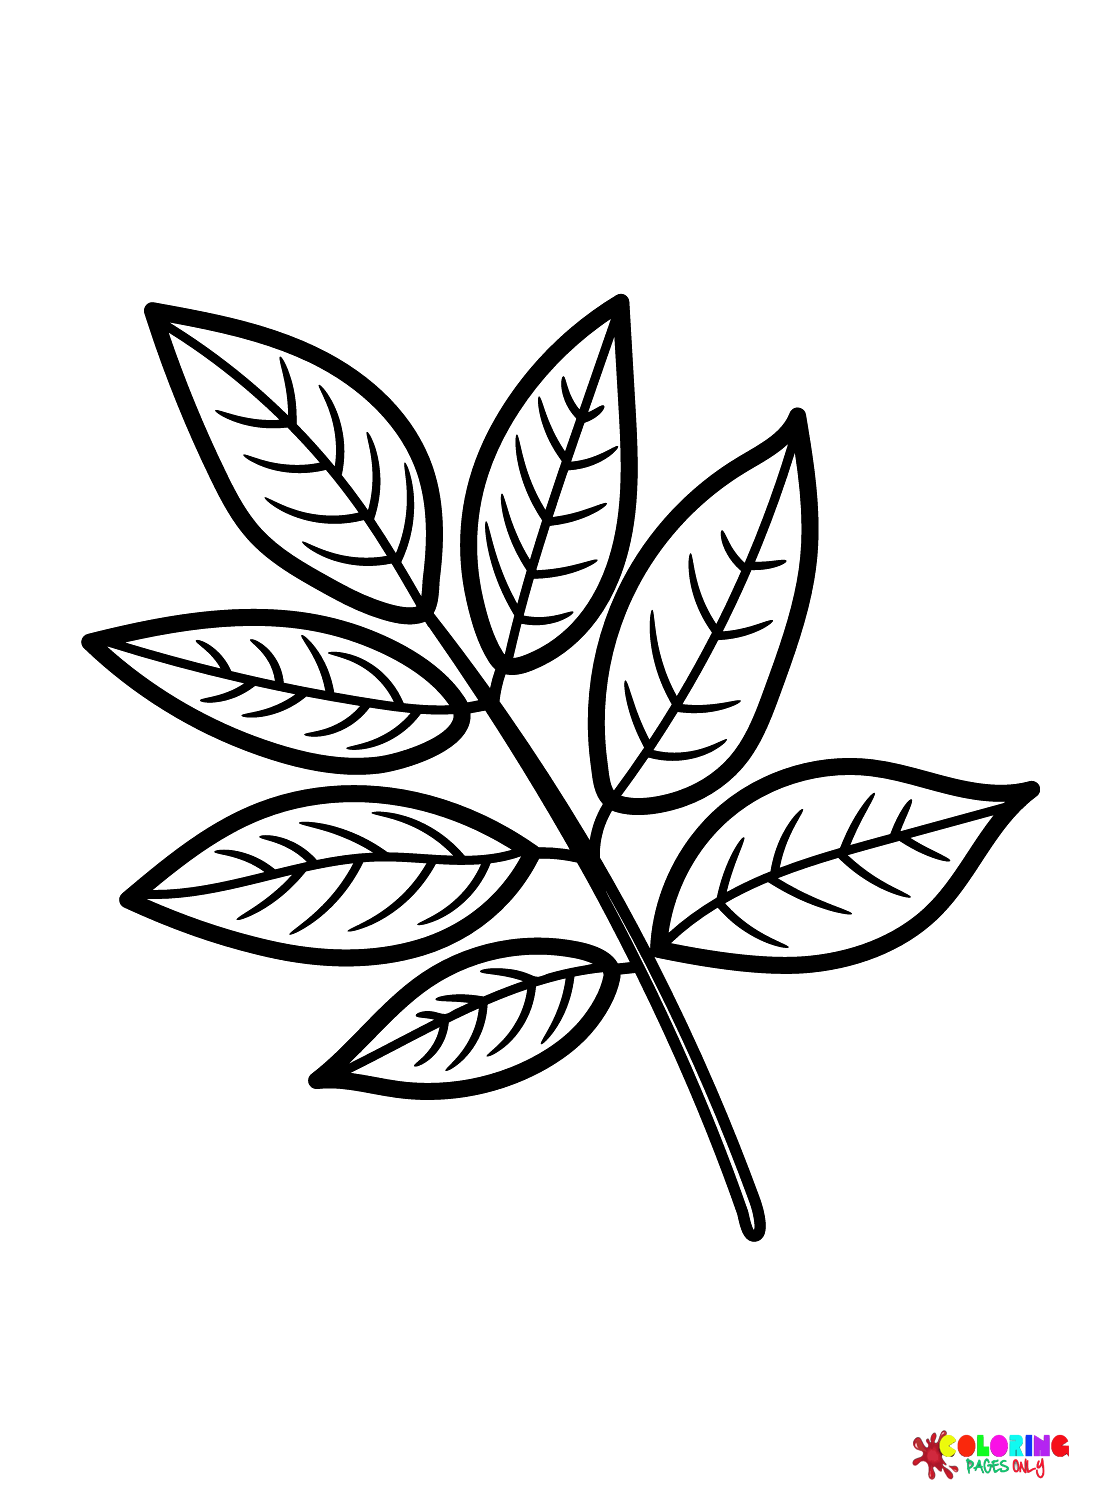 Foglia di frassino dalle foglie